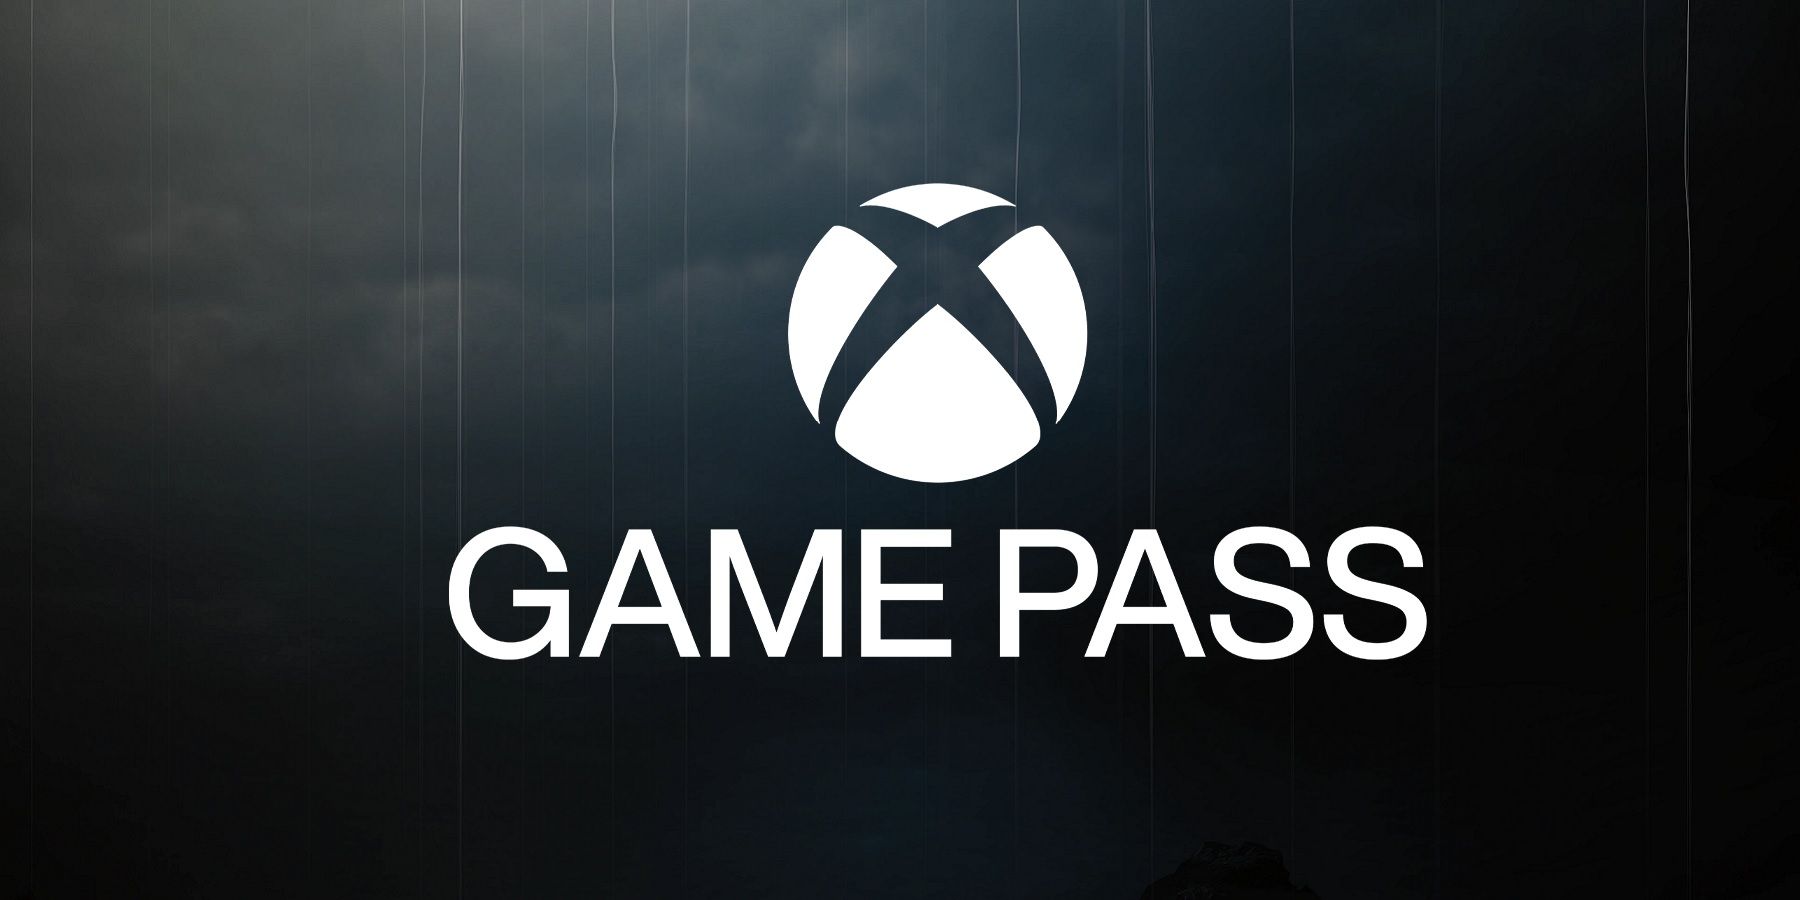 ჭორები: Game Pass შეიძლება დაამატოთ PlayStation Console ექსკლუზივი